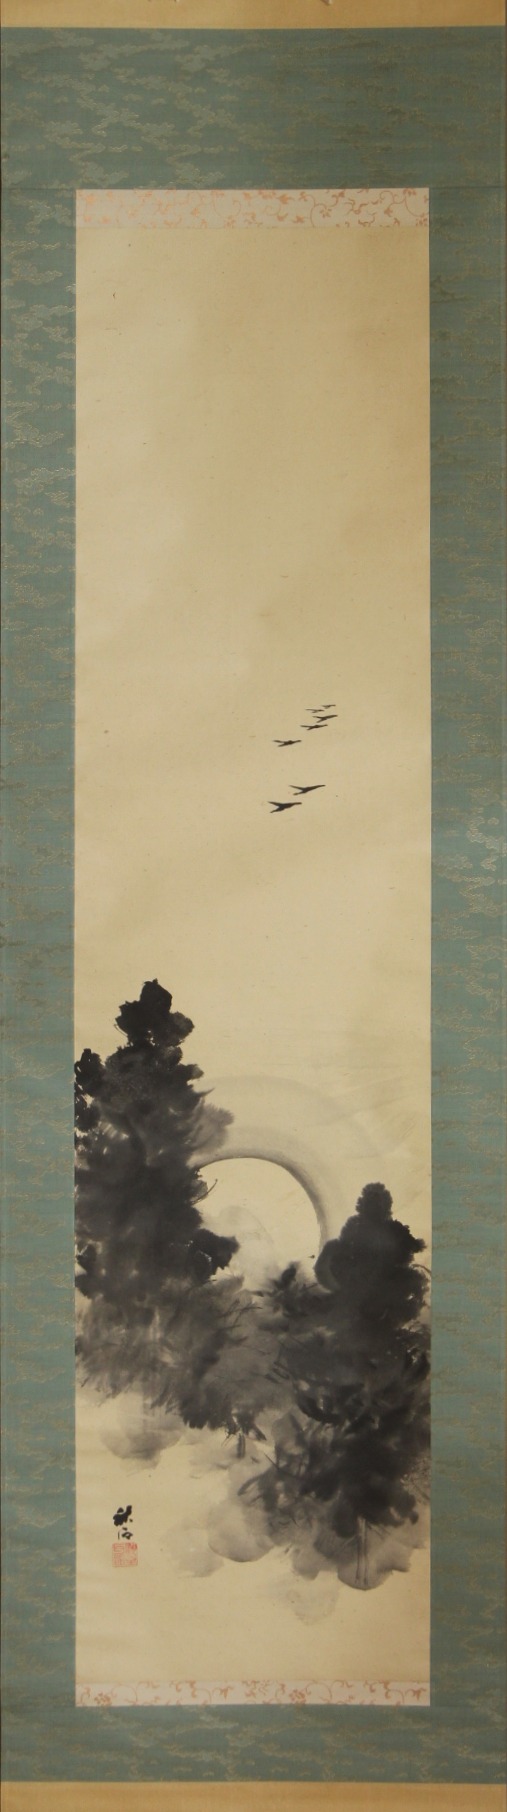 【売却済】奥谷秋石 幅｢松林月中飛雁之図｣ okutani, syuseki "wild geese over the pine forest